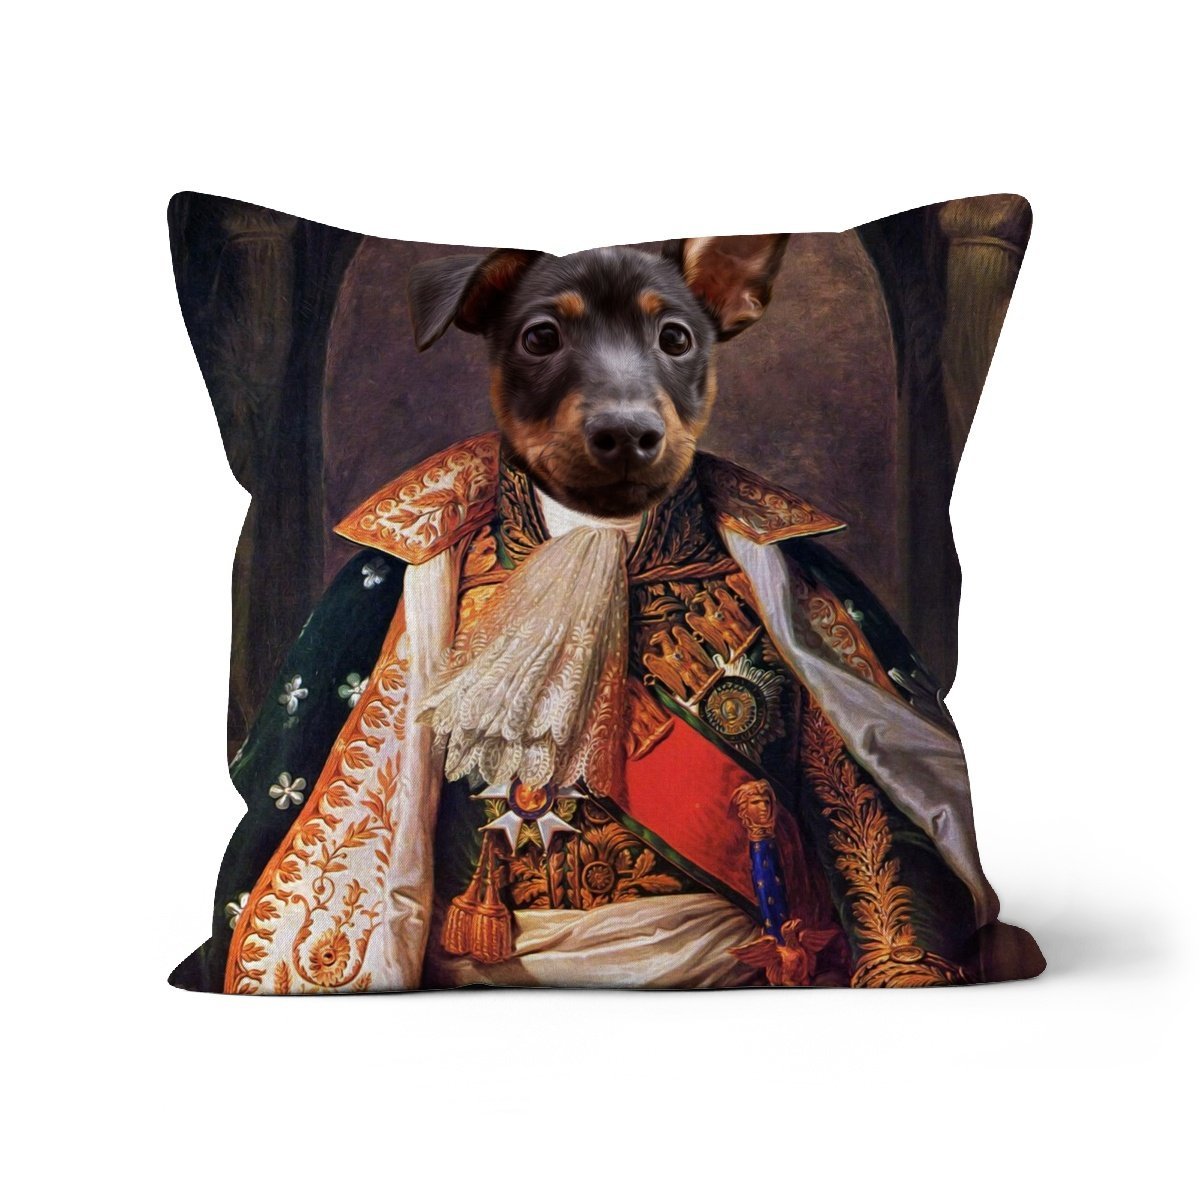 His Highness: Custom Pet Cushion - Paw & Glory - #pet portraits# - #dog portraits# - #pet portraits uk#paw & glory, custom pet portrait pillow,dog memory pillow, pillow with pet picture, dog on pillow, dog memory pillow, pet pillow